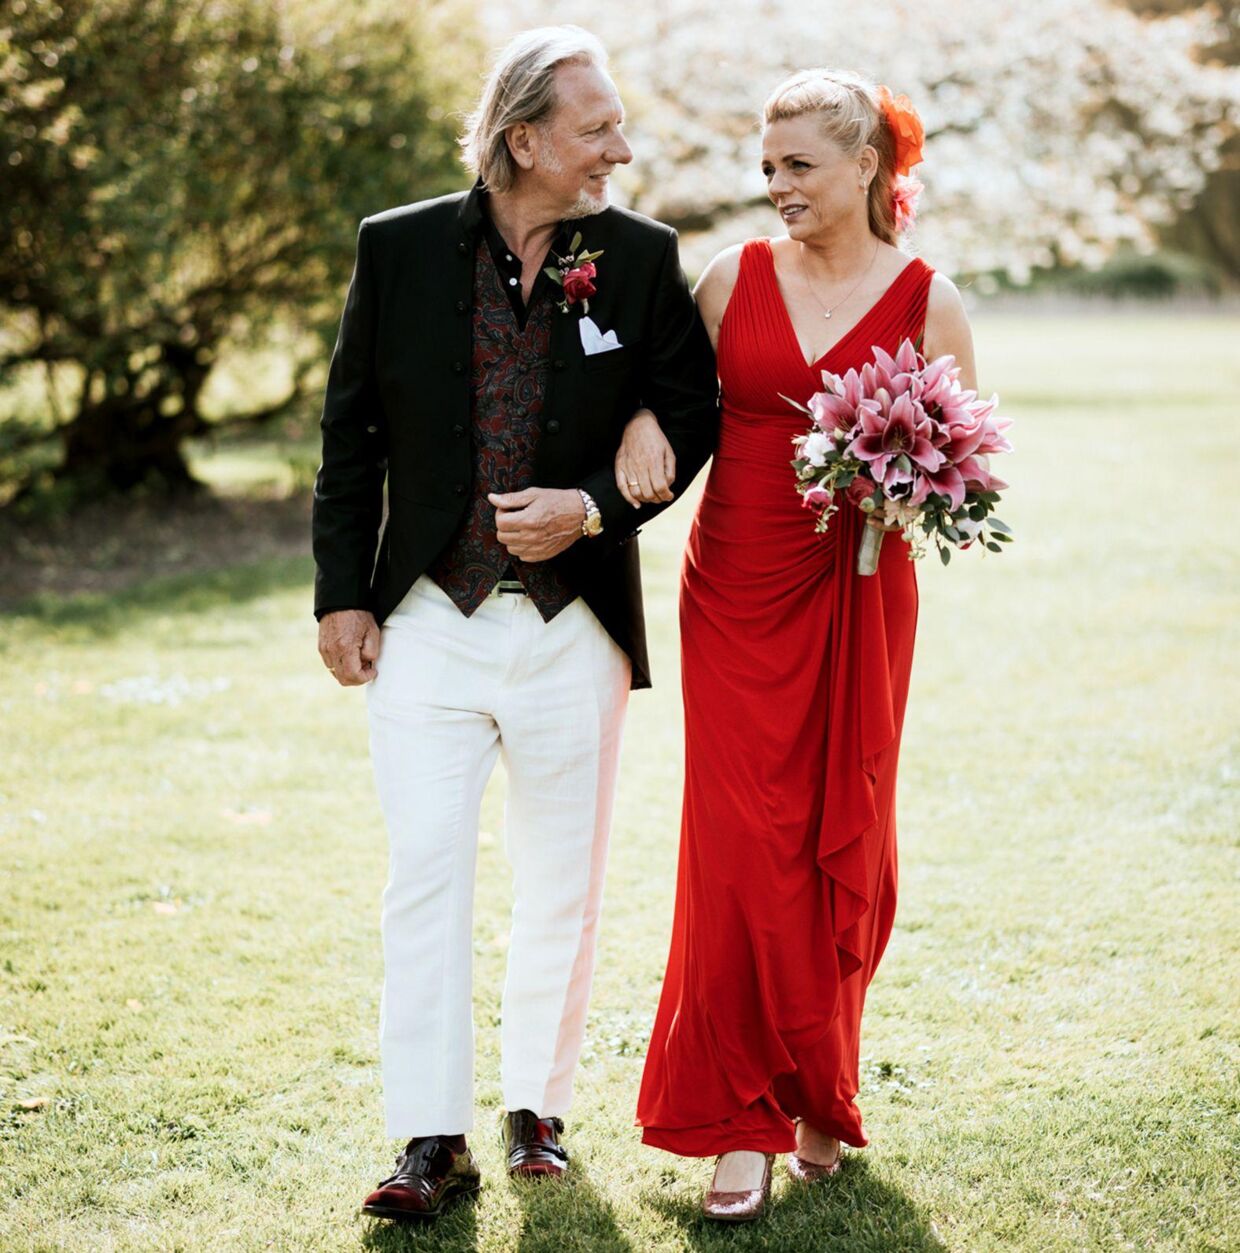 Steen Theill var meget begejstret for, at 59-årige Mette Blume havde taget rød kjole på. Det passede godt til hende og hendes alder, mener han.